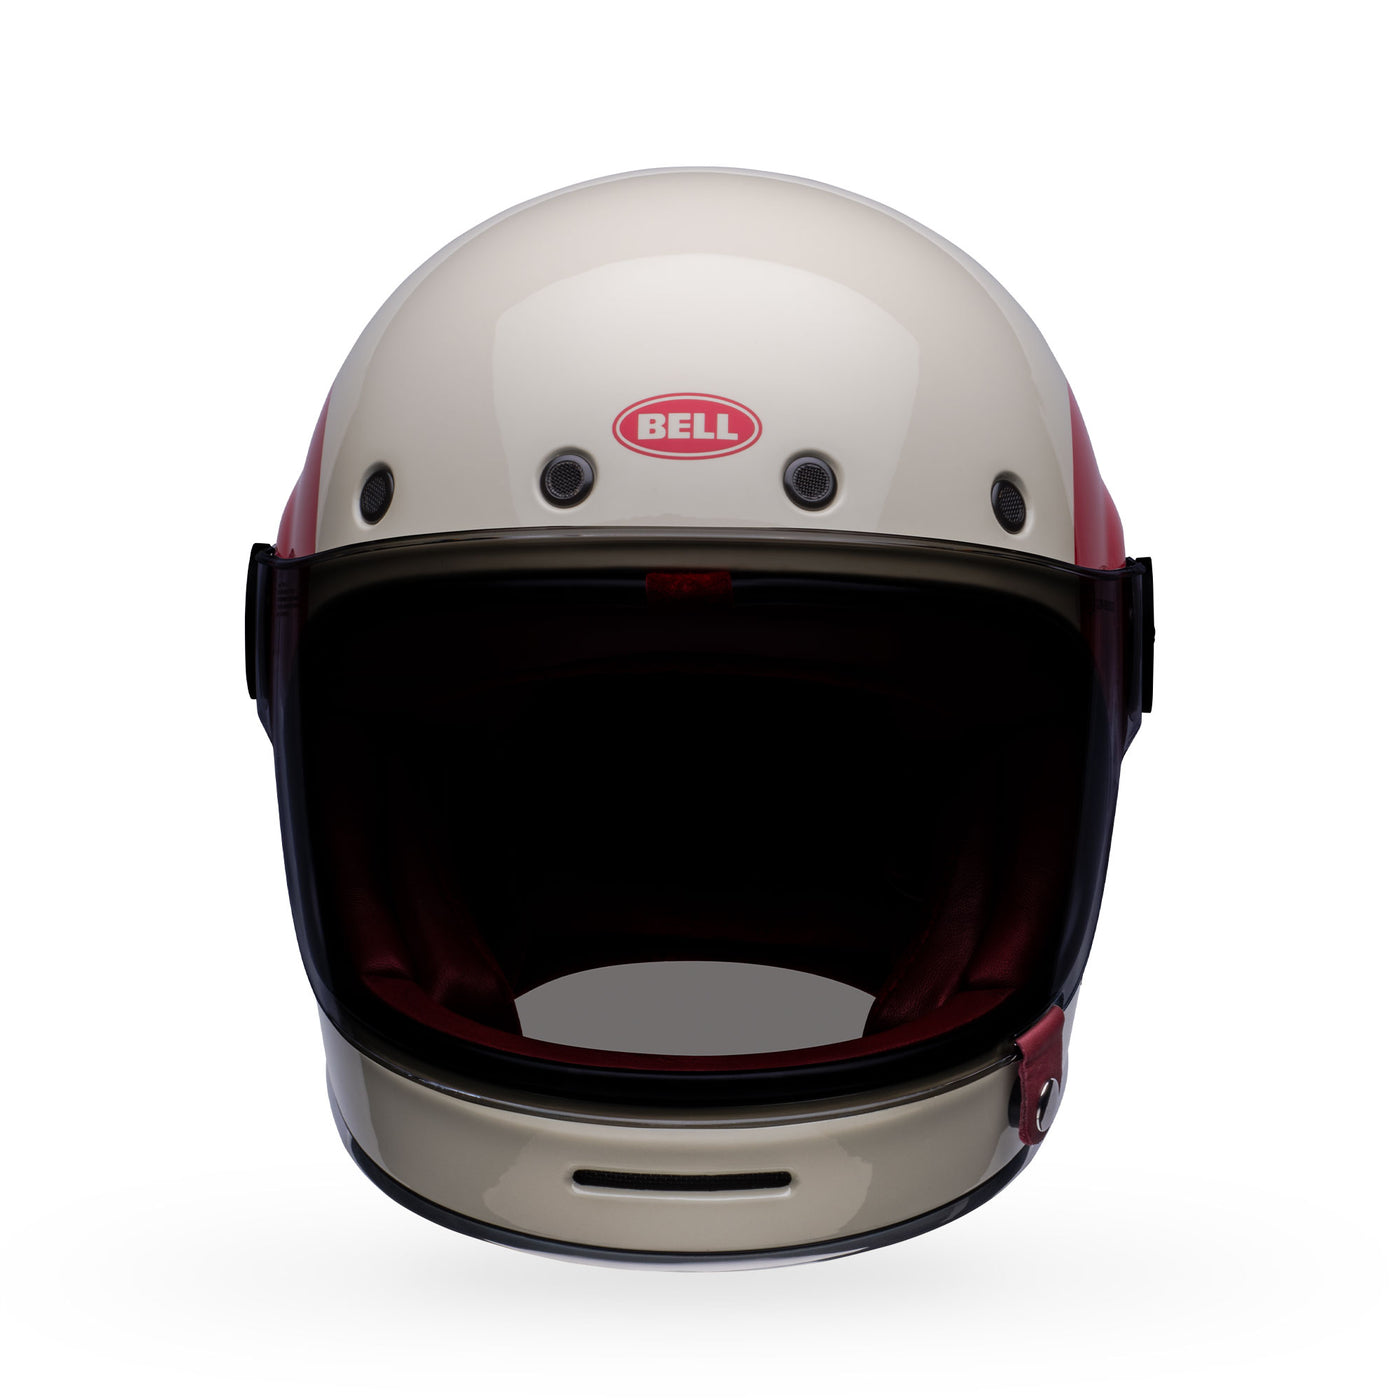 bell bullitt culture classic motorcycle helmet tt gloss vintage white oxblood front